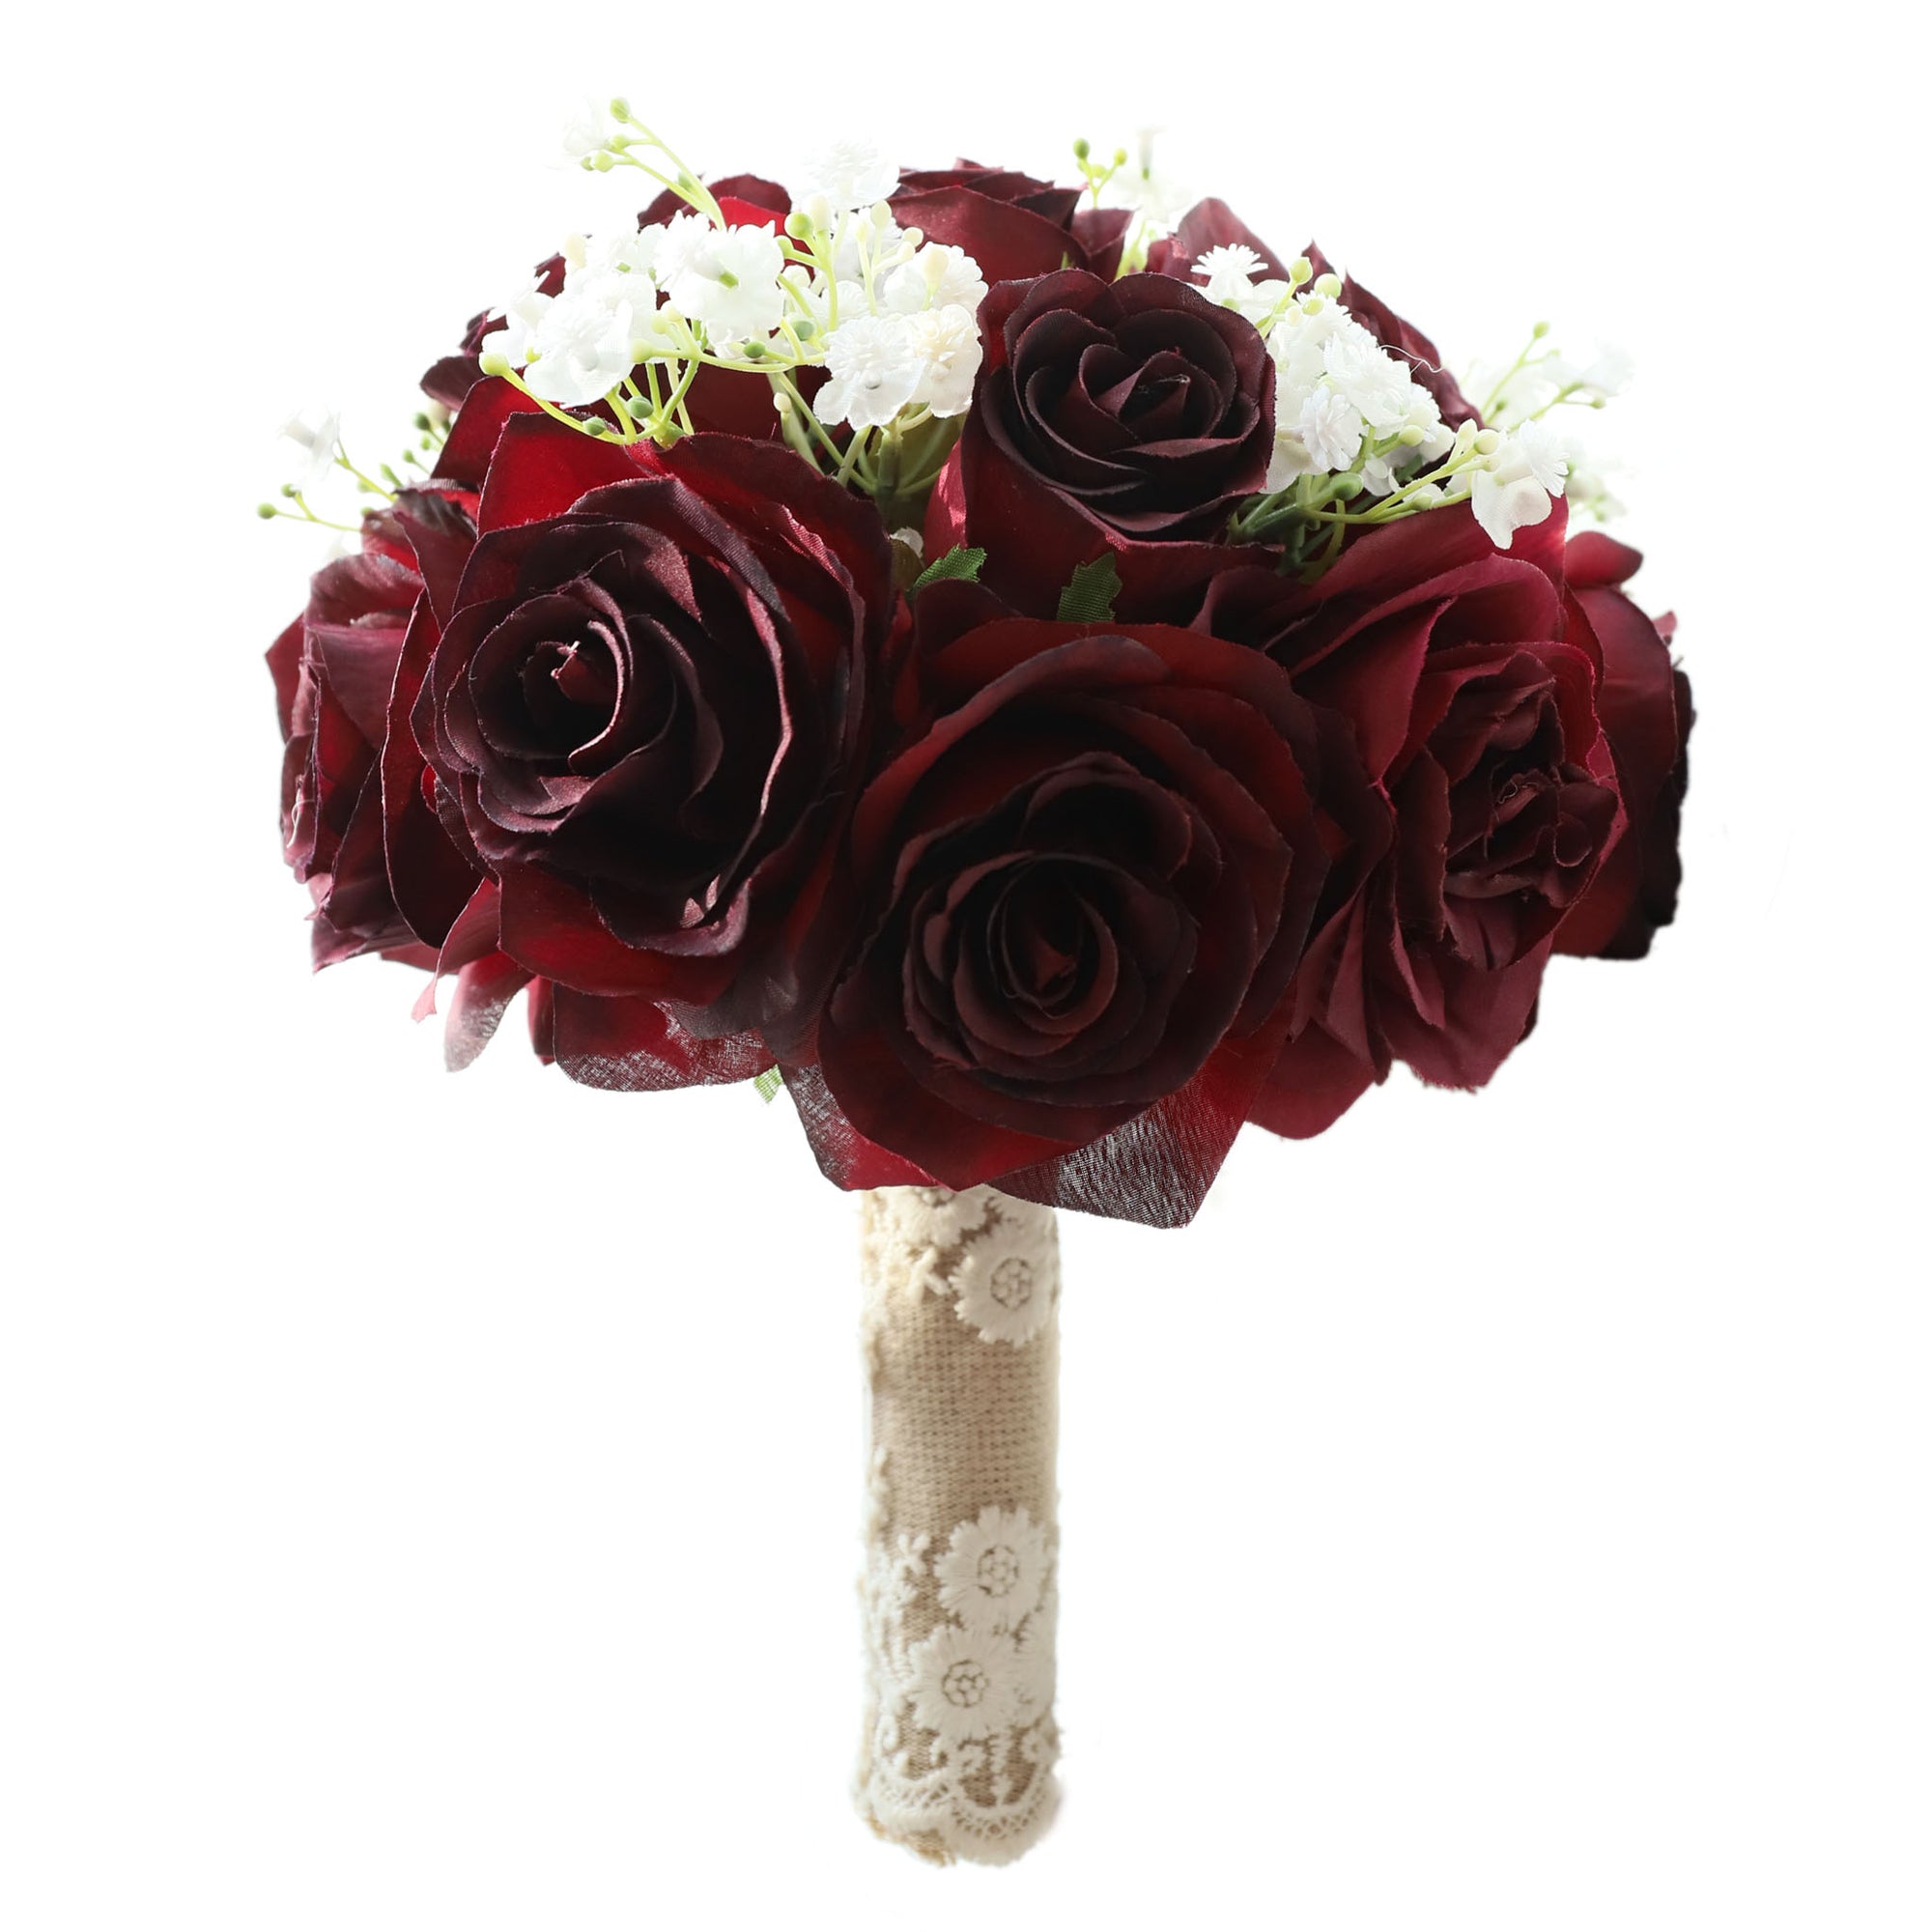 Burgundy Rose Flower Fall Wedding Bouquet